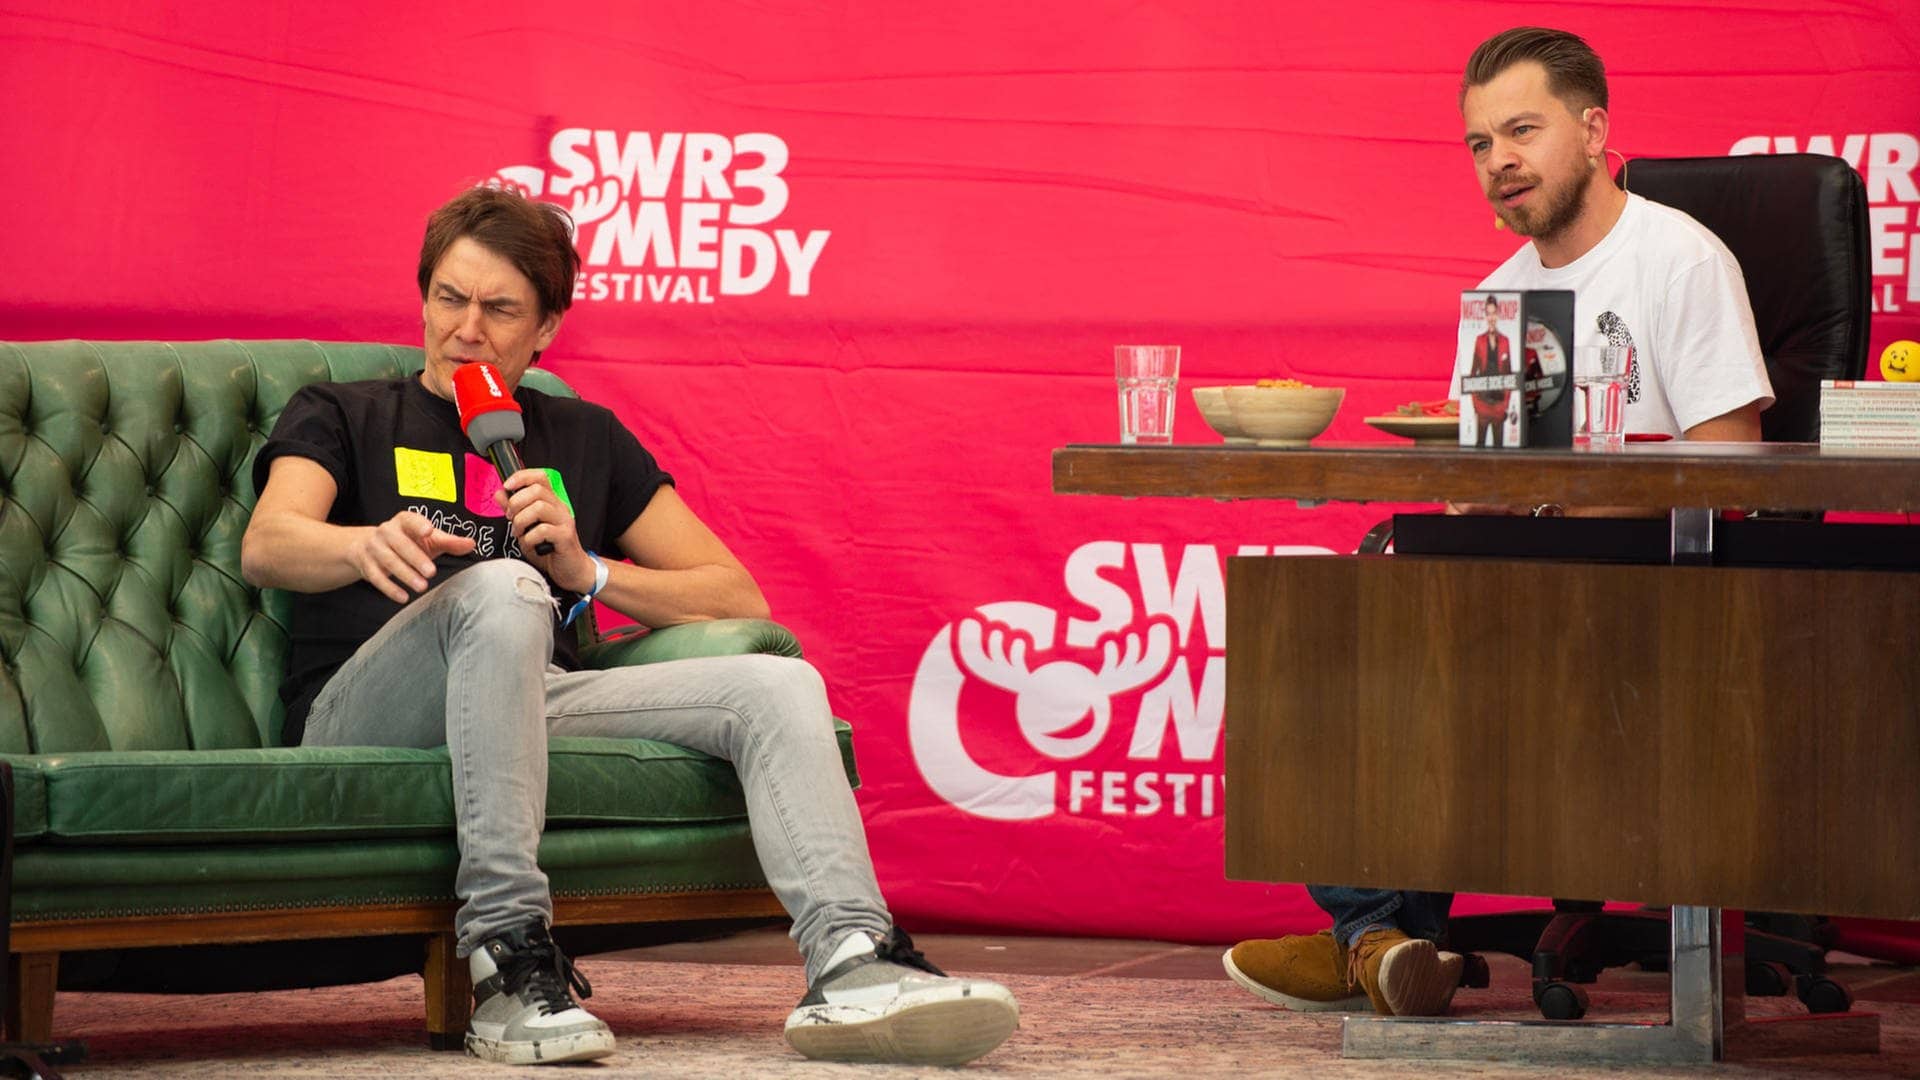 Matze Knop - SWR3 Comedy Festival 2018 (Foto: SWR3)